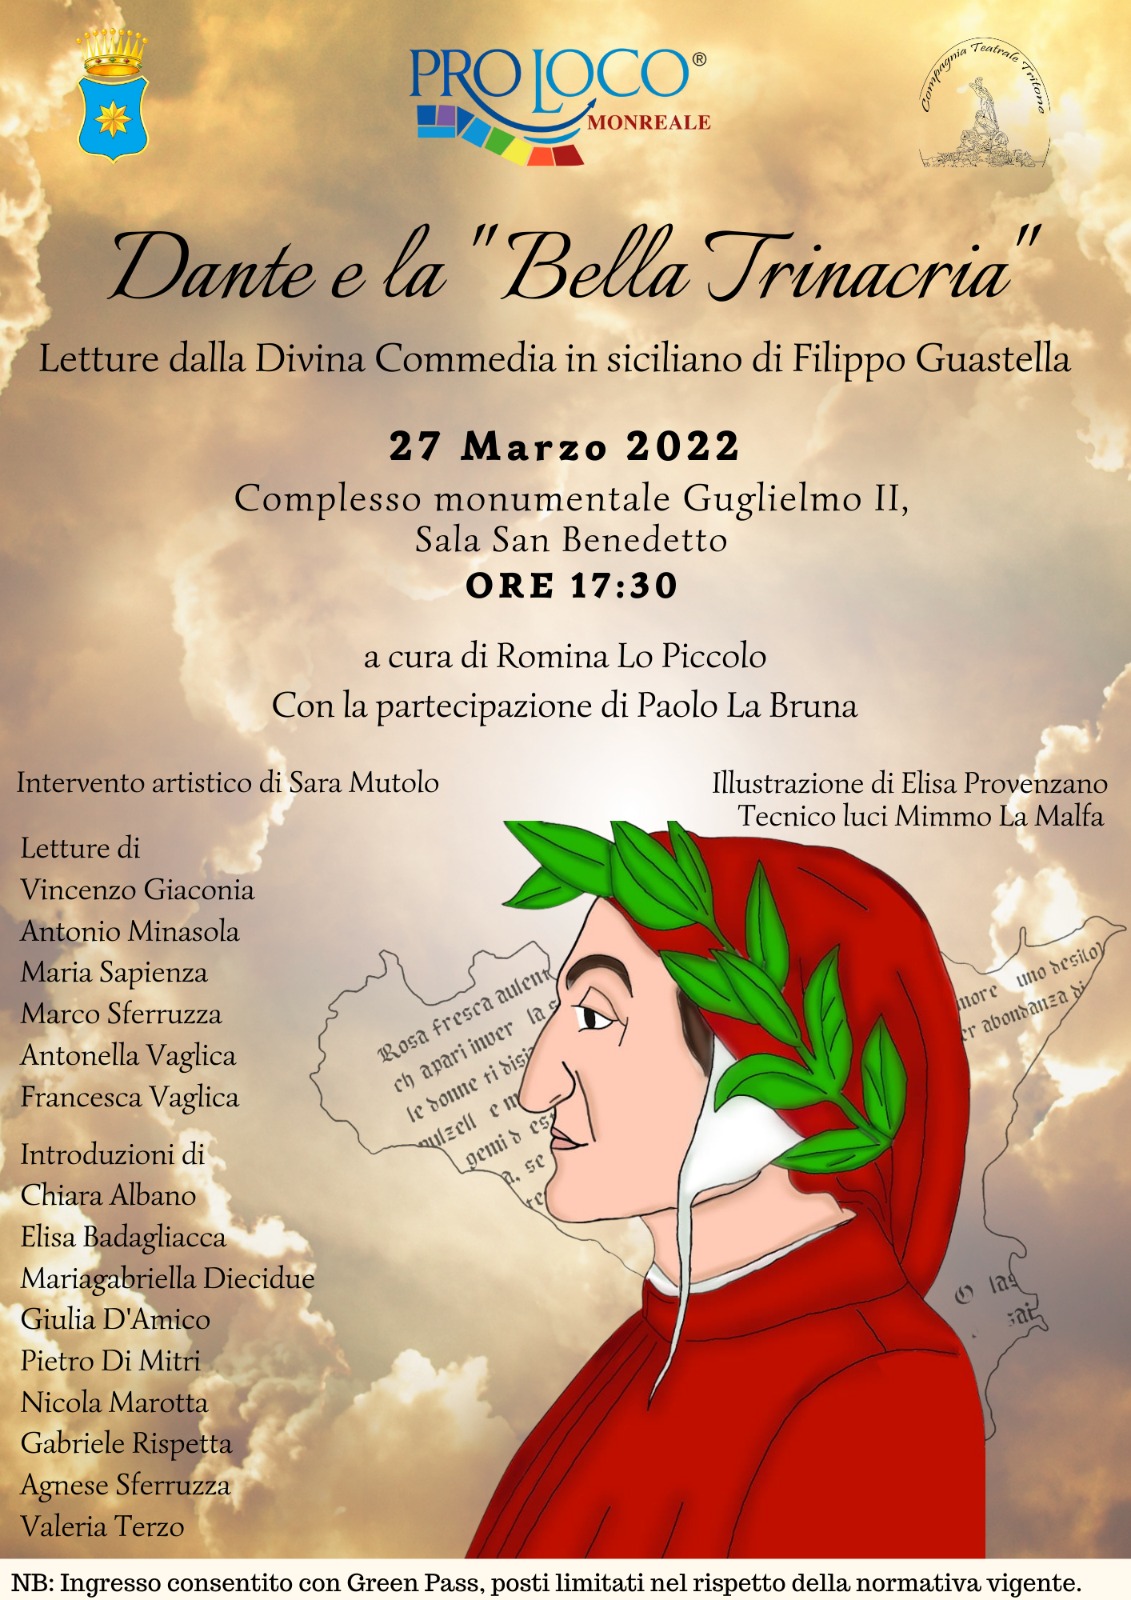 Lo spettacolo “Dante e la Bella Trinacria”, domani, nella Sala San Benedetto del complesso monumentale Guglielmo II.